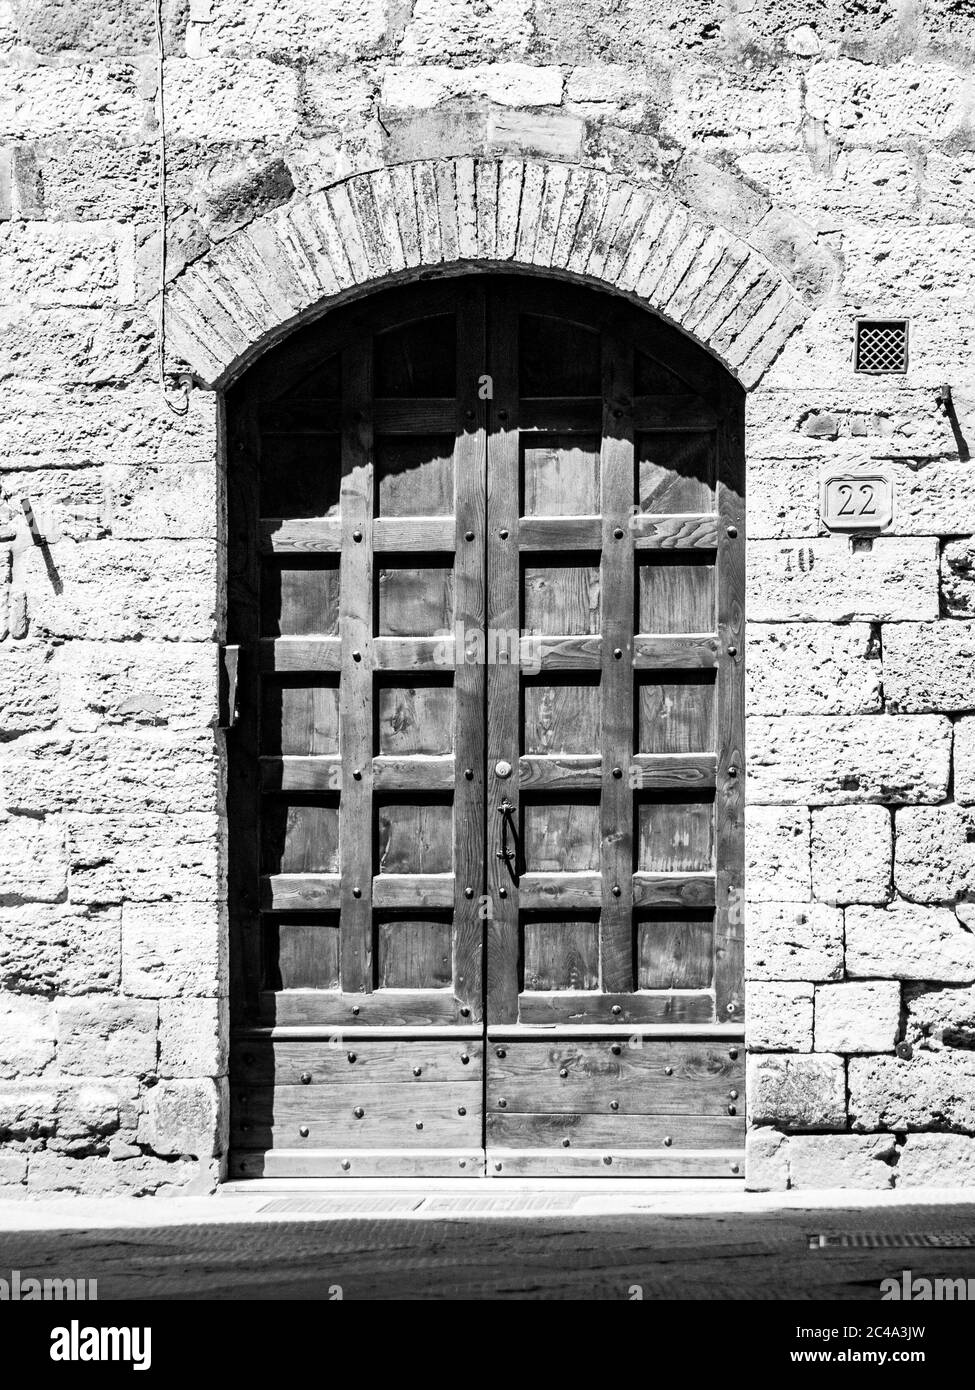 Ancienne porte en bois marron dans la rue médiévale. Image en noir et blanc. Banque D'Images